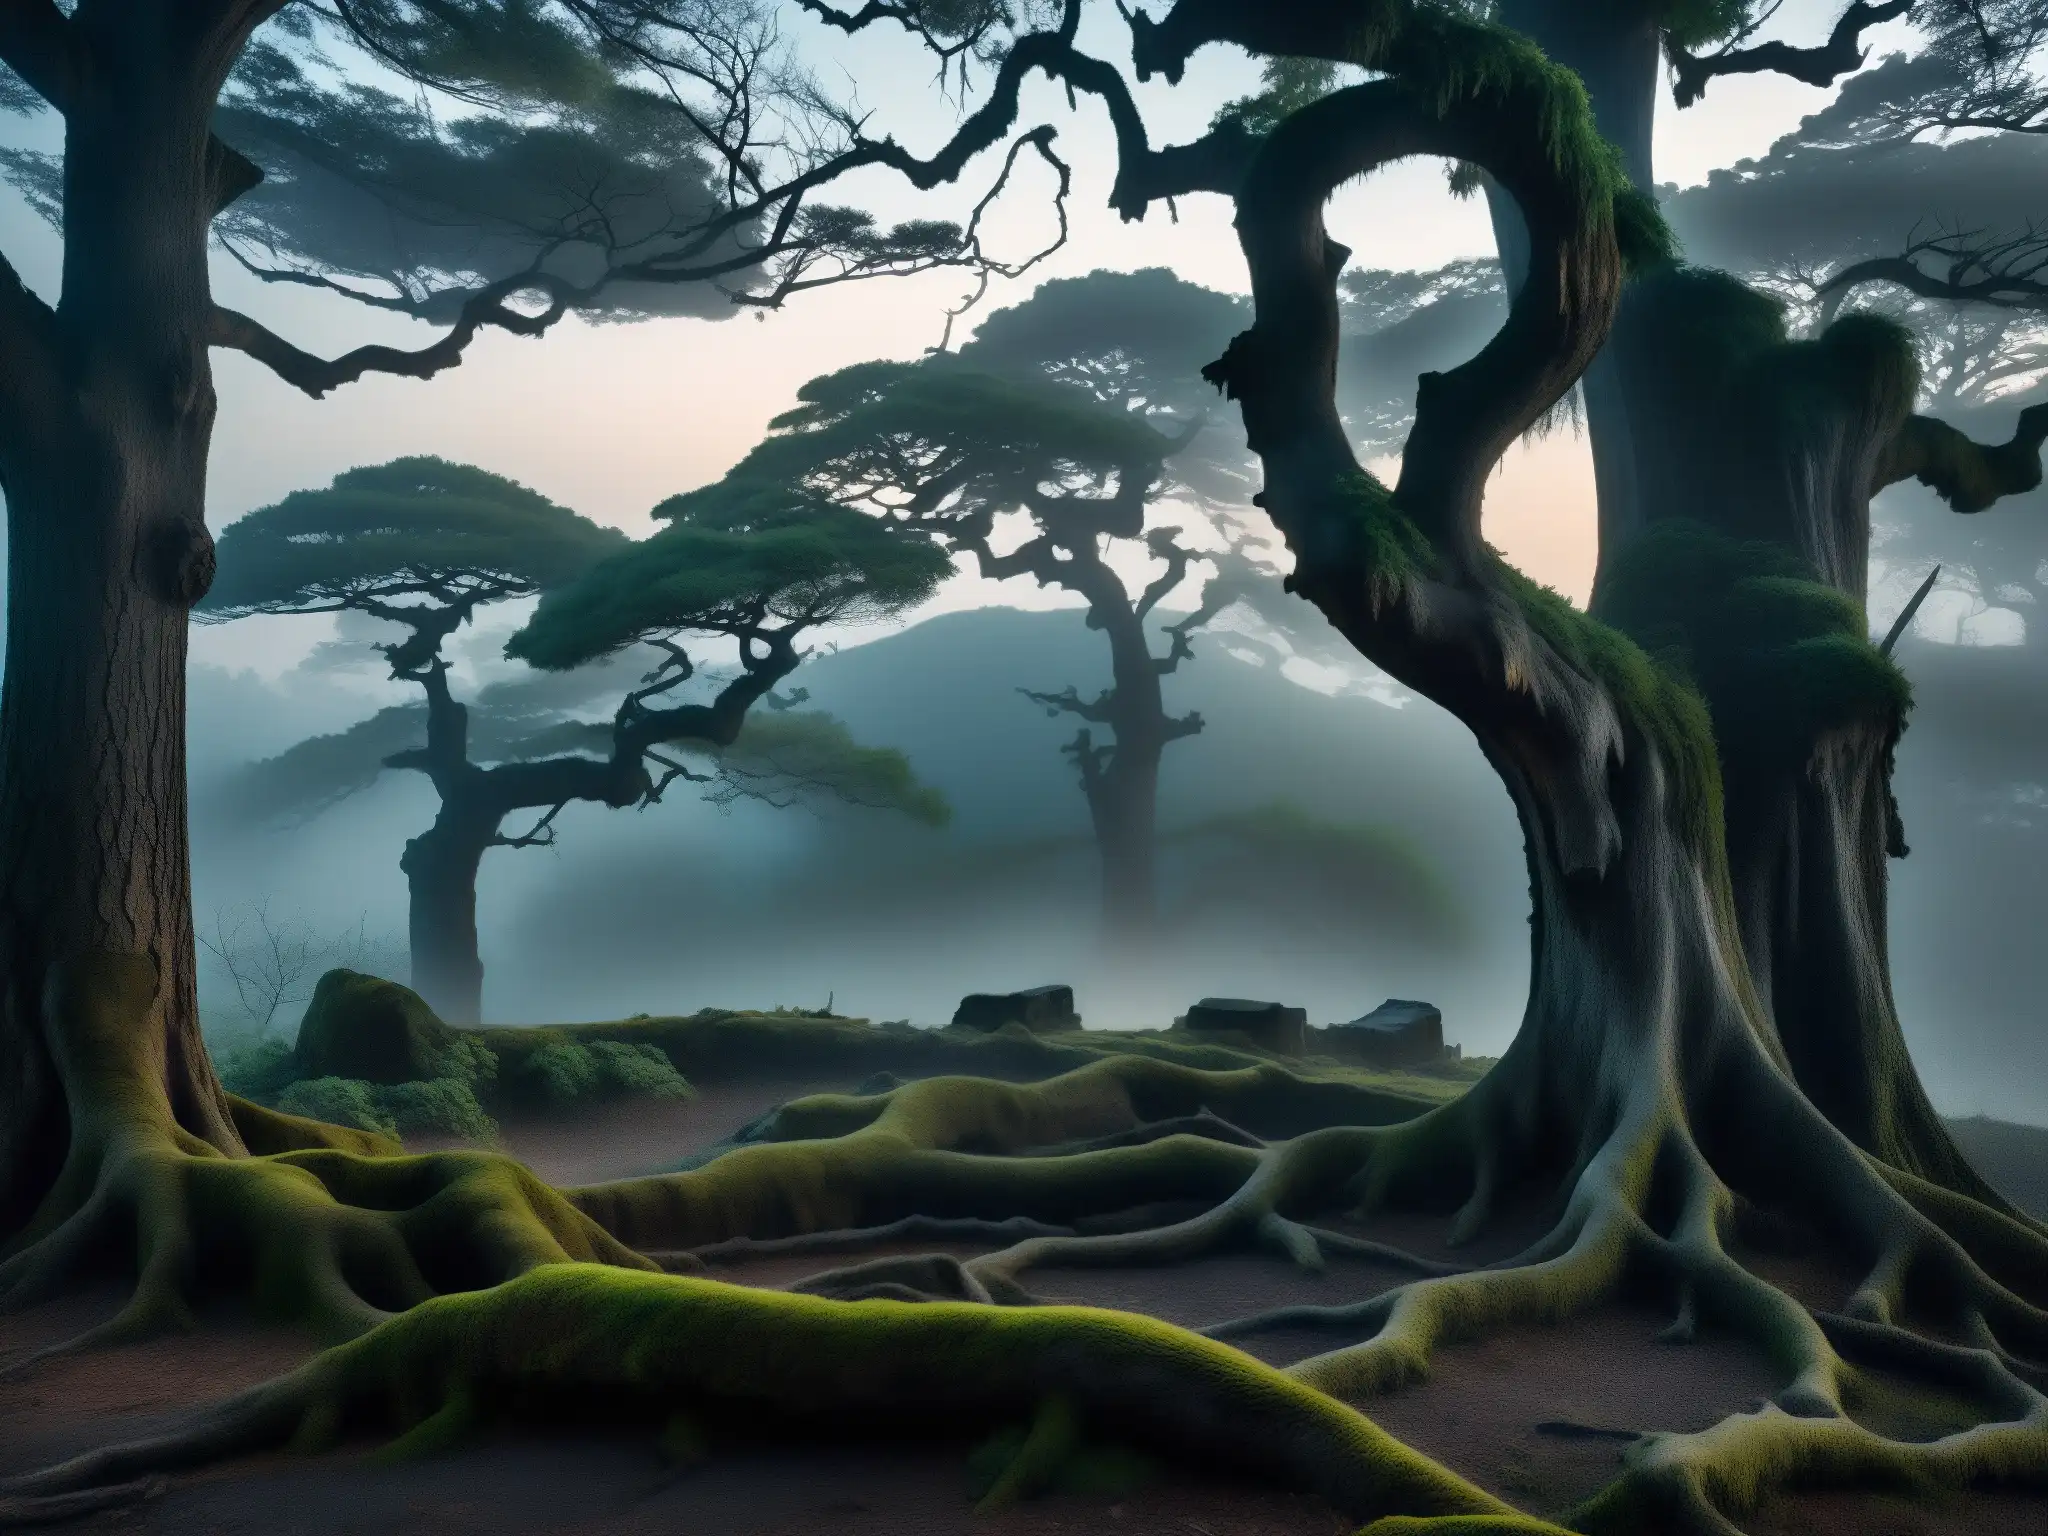 Un bosque misterioso y neblinoso al anochecer, con árboles retorcidos proyectando sombras inquietantes